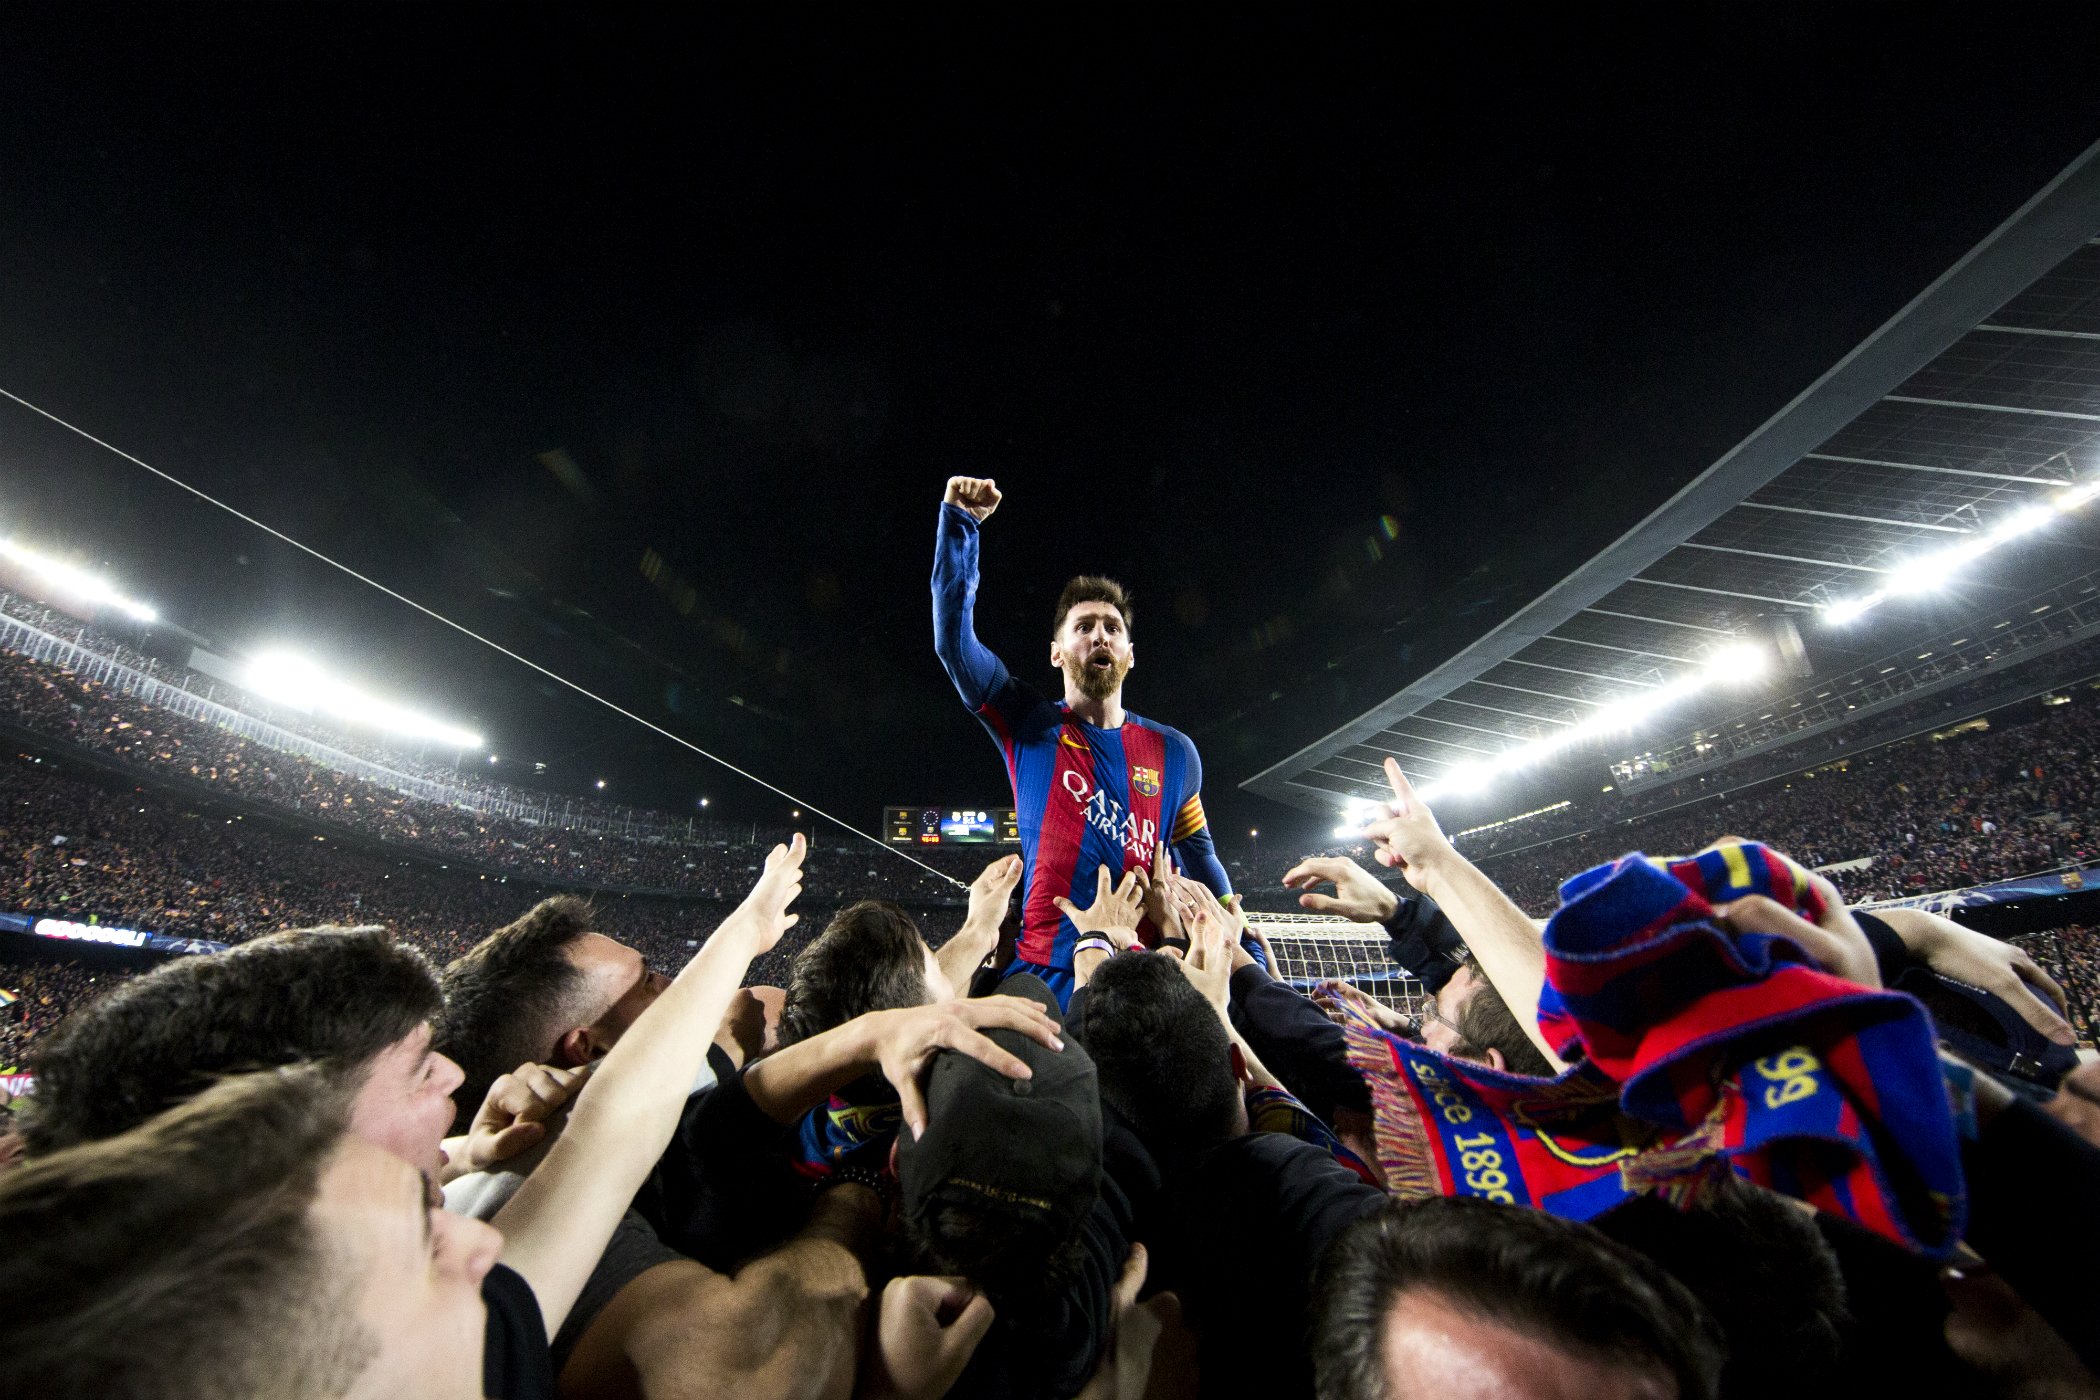 La història darrere de l'eufòrica foto de Messi